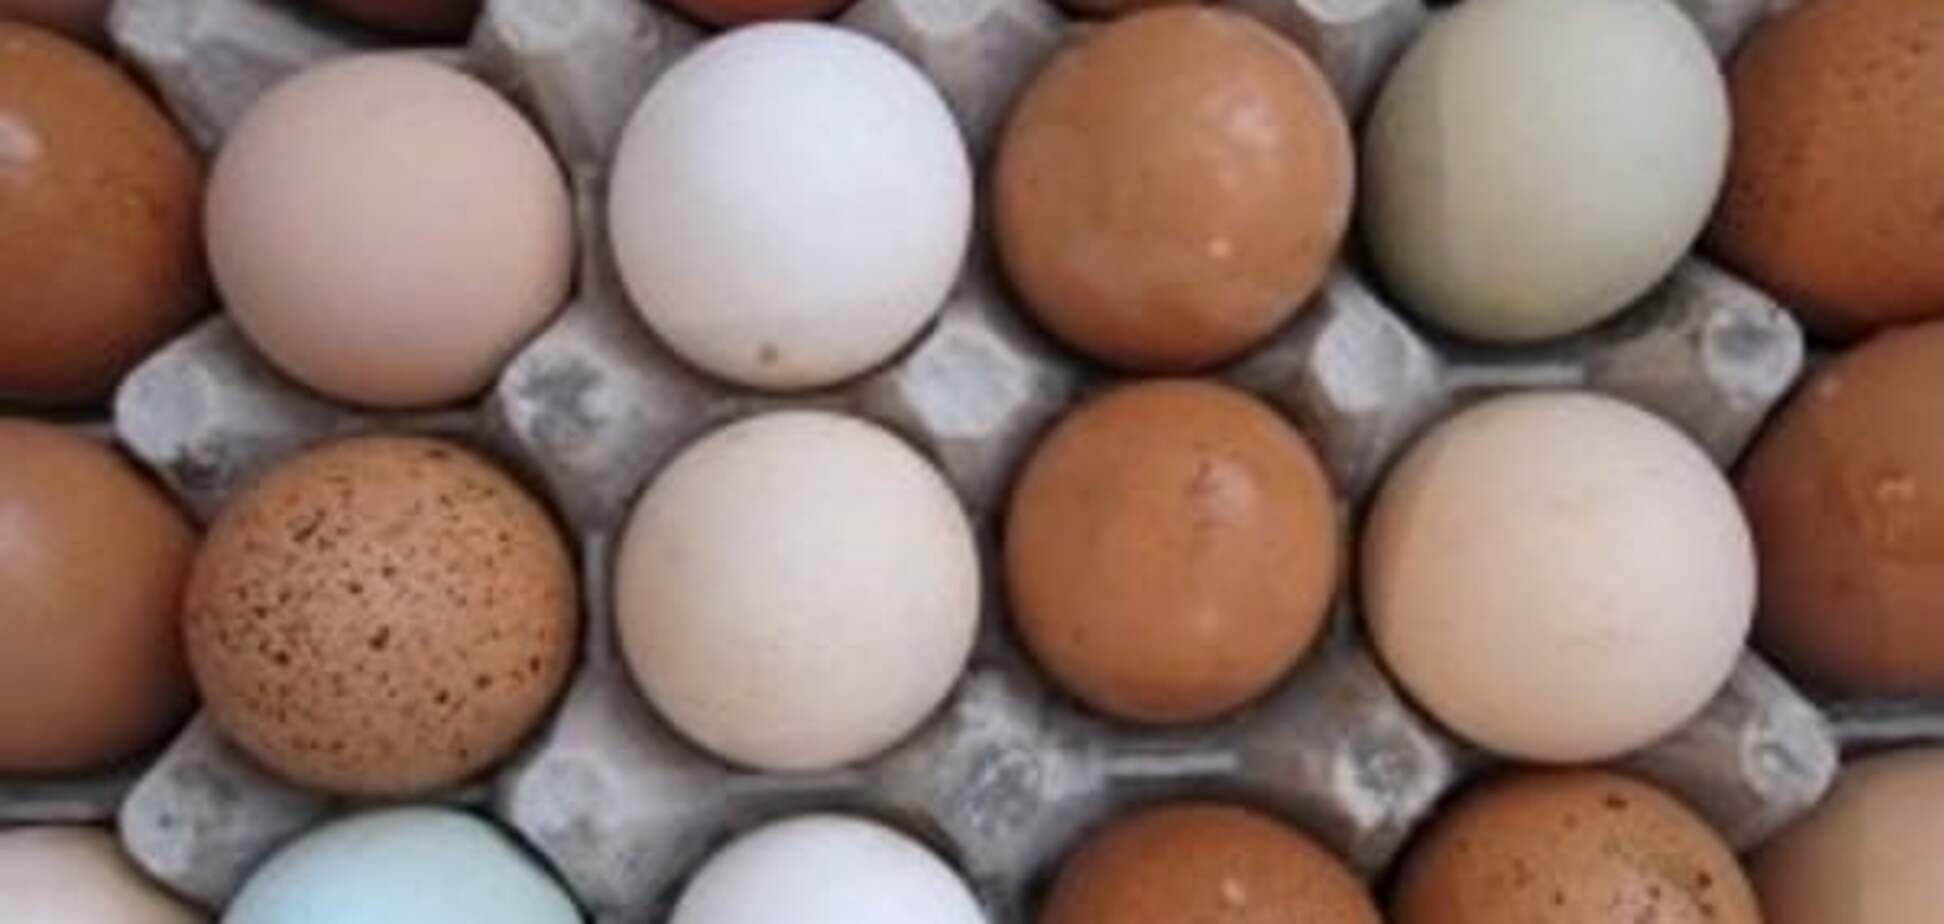 Ukrlandfarming Олега Бахматюка расширяет экспортные рынки яичной продукции